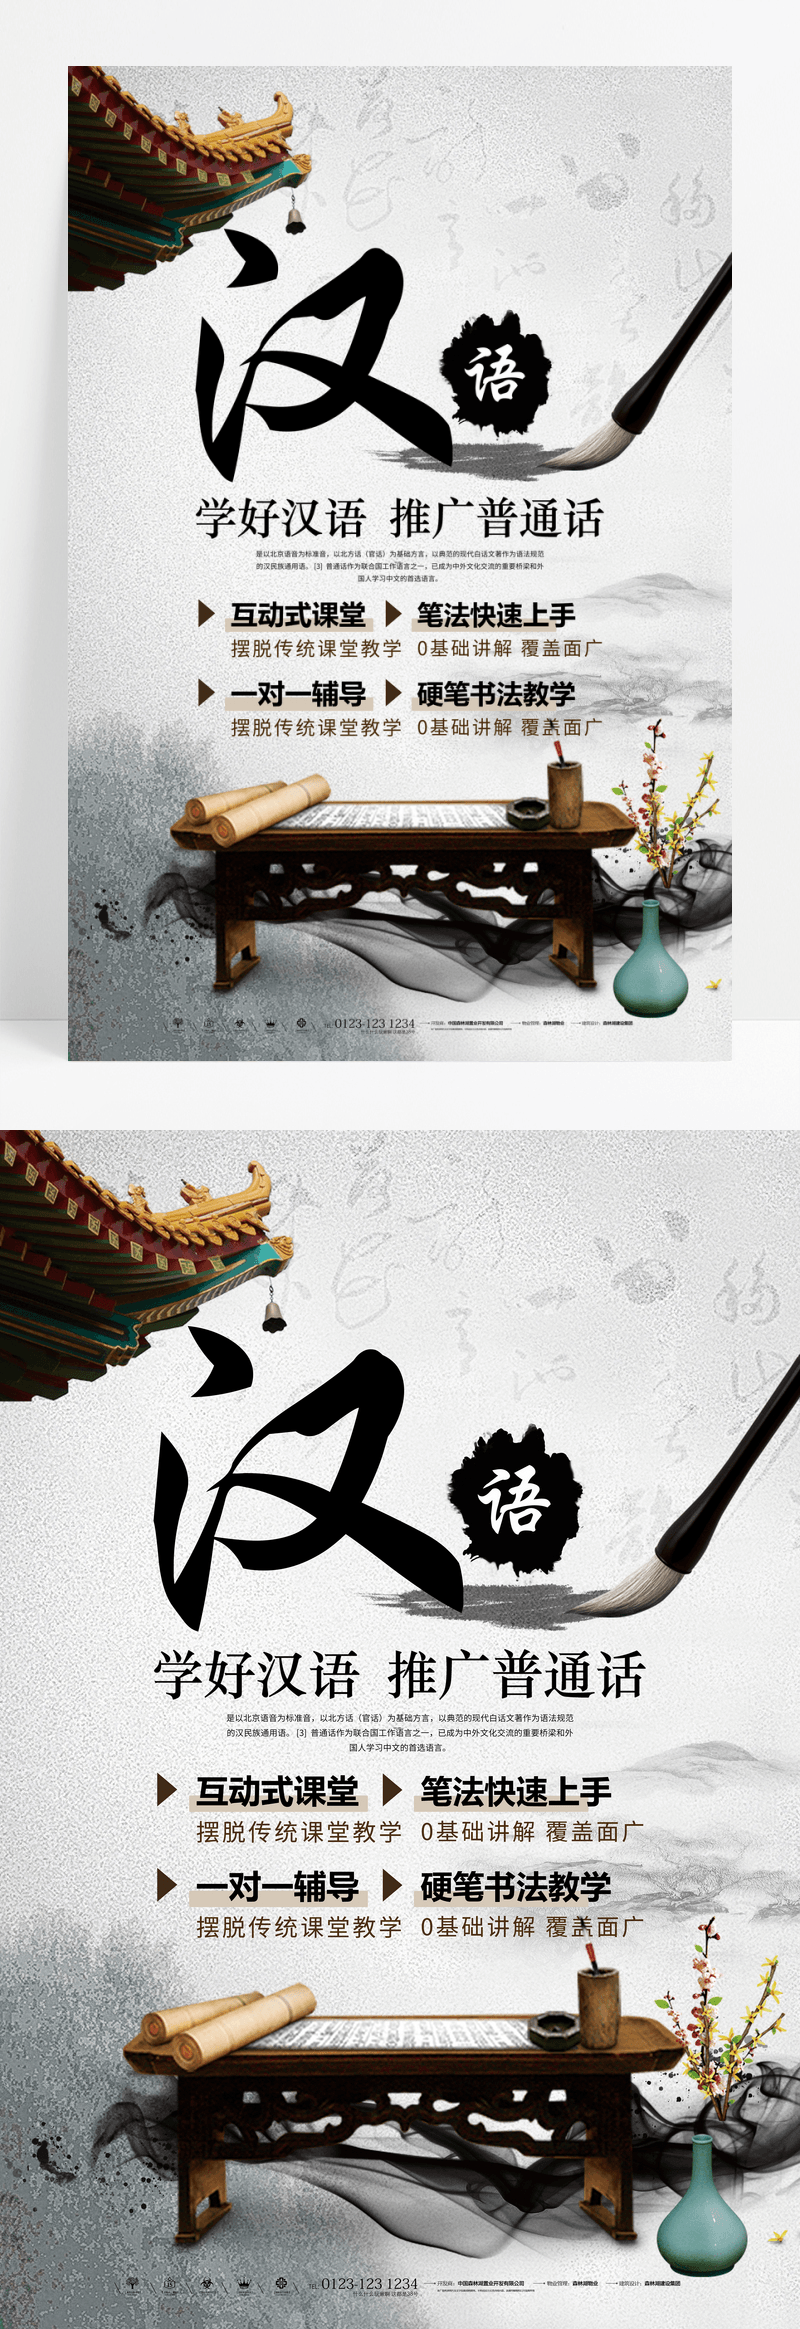 大气简约推广普通话学习汉语宣传海报设计